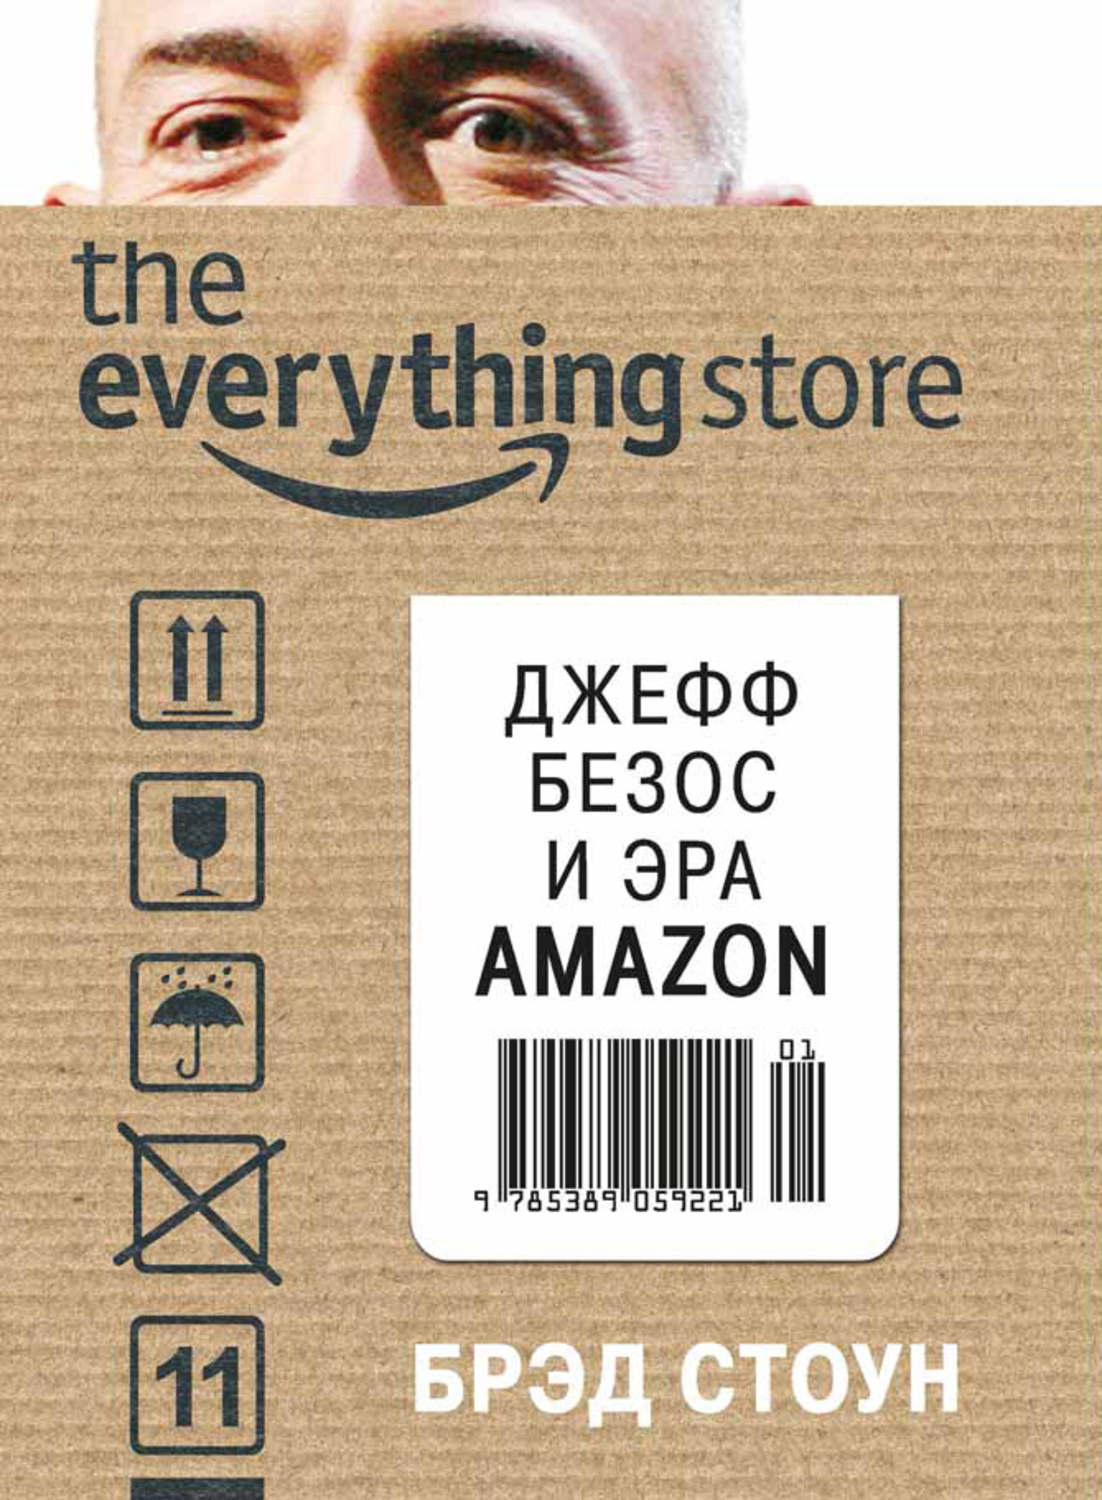 Стоун Брэд - «The Everything Store. Джефф Безос и эра Amazon»